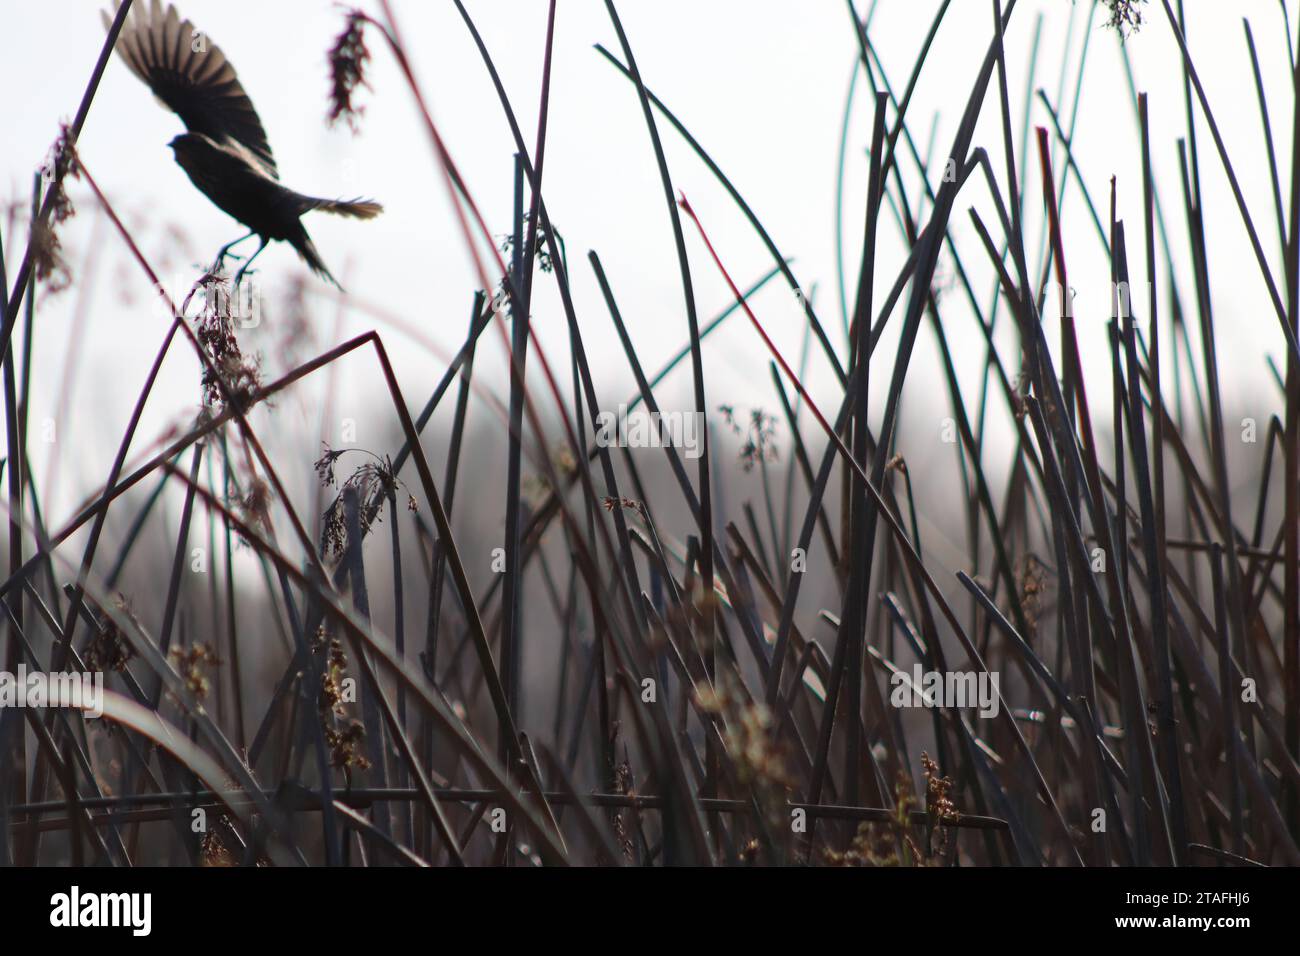 Female Blackbird flying over Reeds Stock Photo